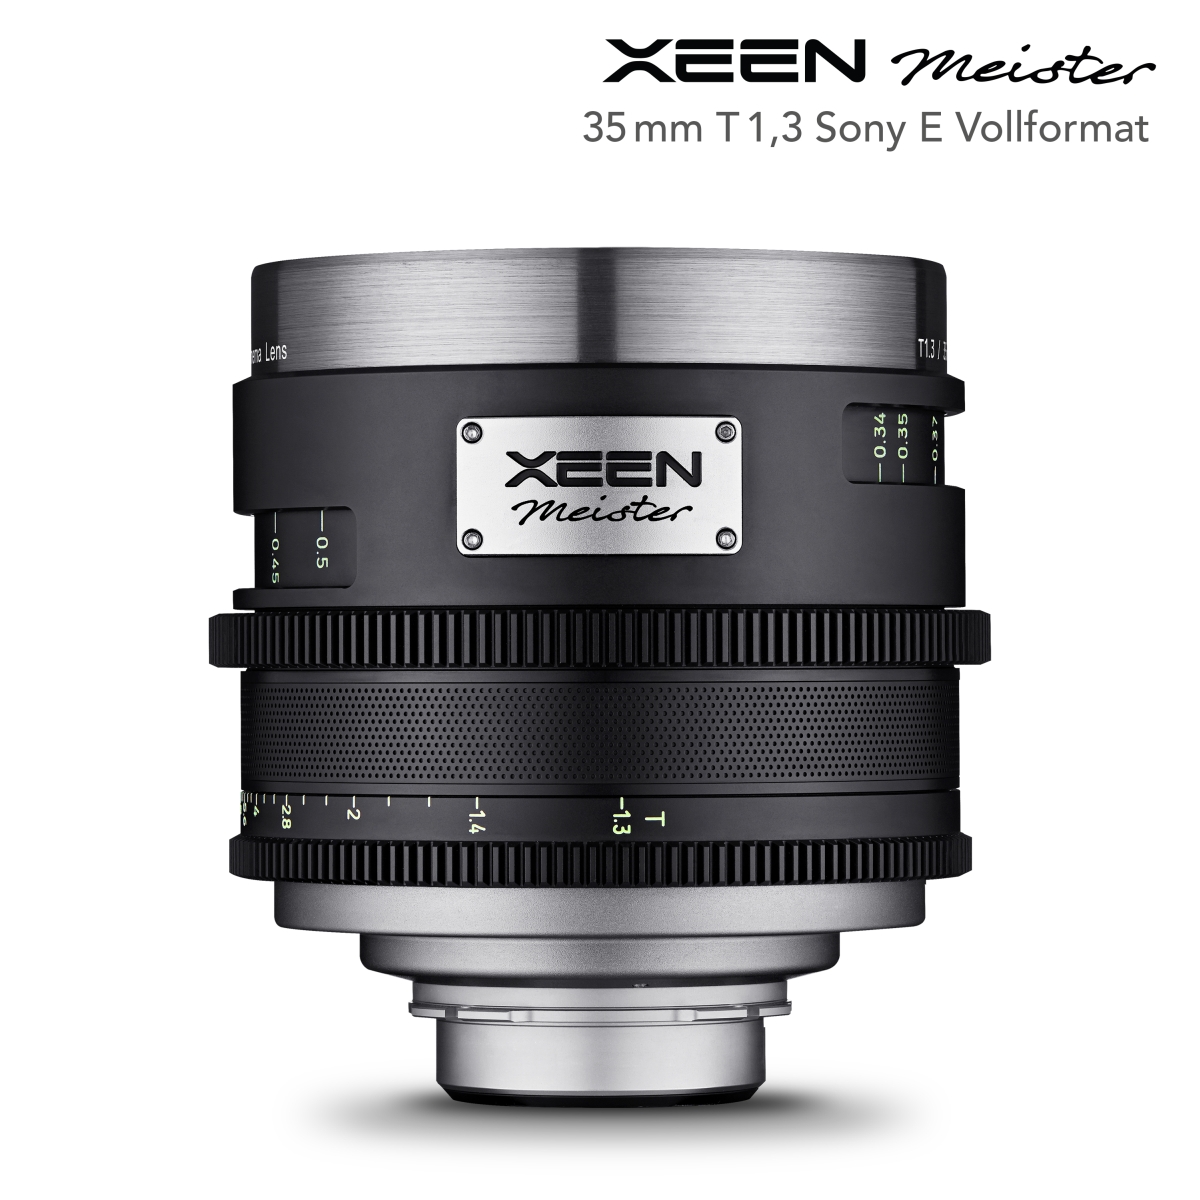 XEEN Meister 35mm T1.3 Sony E Vollformat